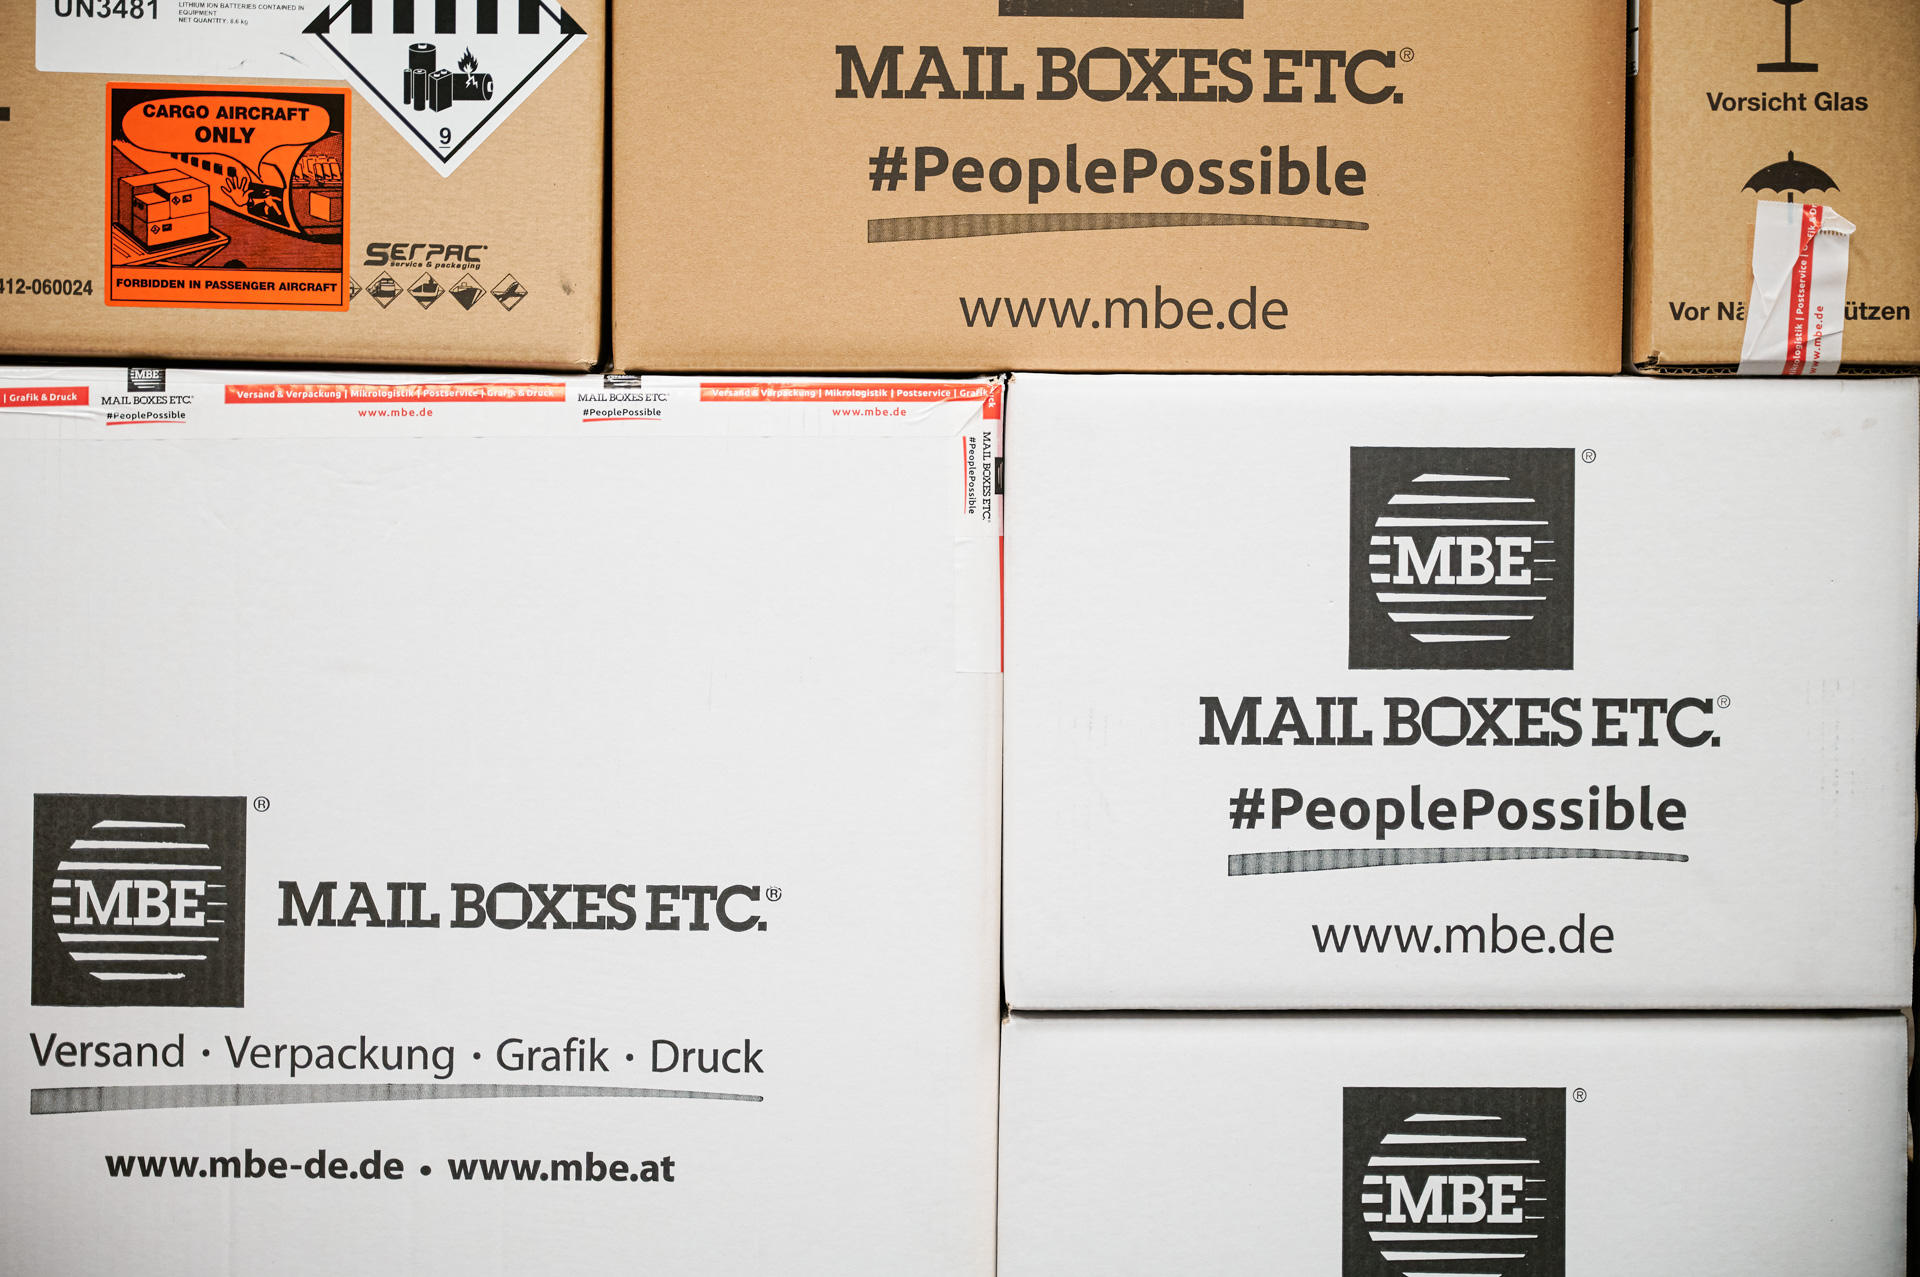 Das Team von Mail Boxes Etc. besteht aus engagierten und erfahrenen Experten, die sich darauf konzentrieren, Ihnen den bestmöglichen Service zu bieten. Wir sind stolz darauf, ein professionelles und freundliches Team zu haben, das Ihnen bei allen Fragen u